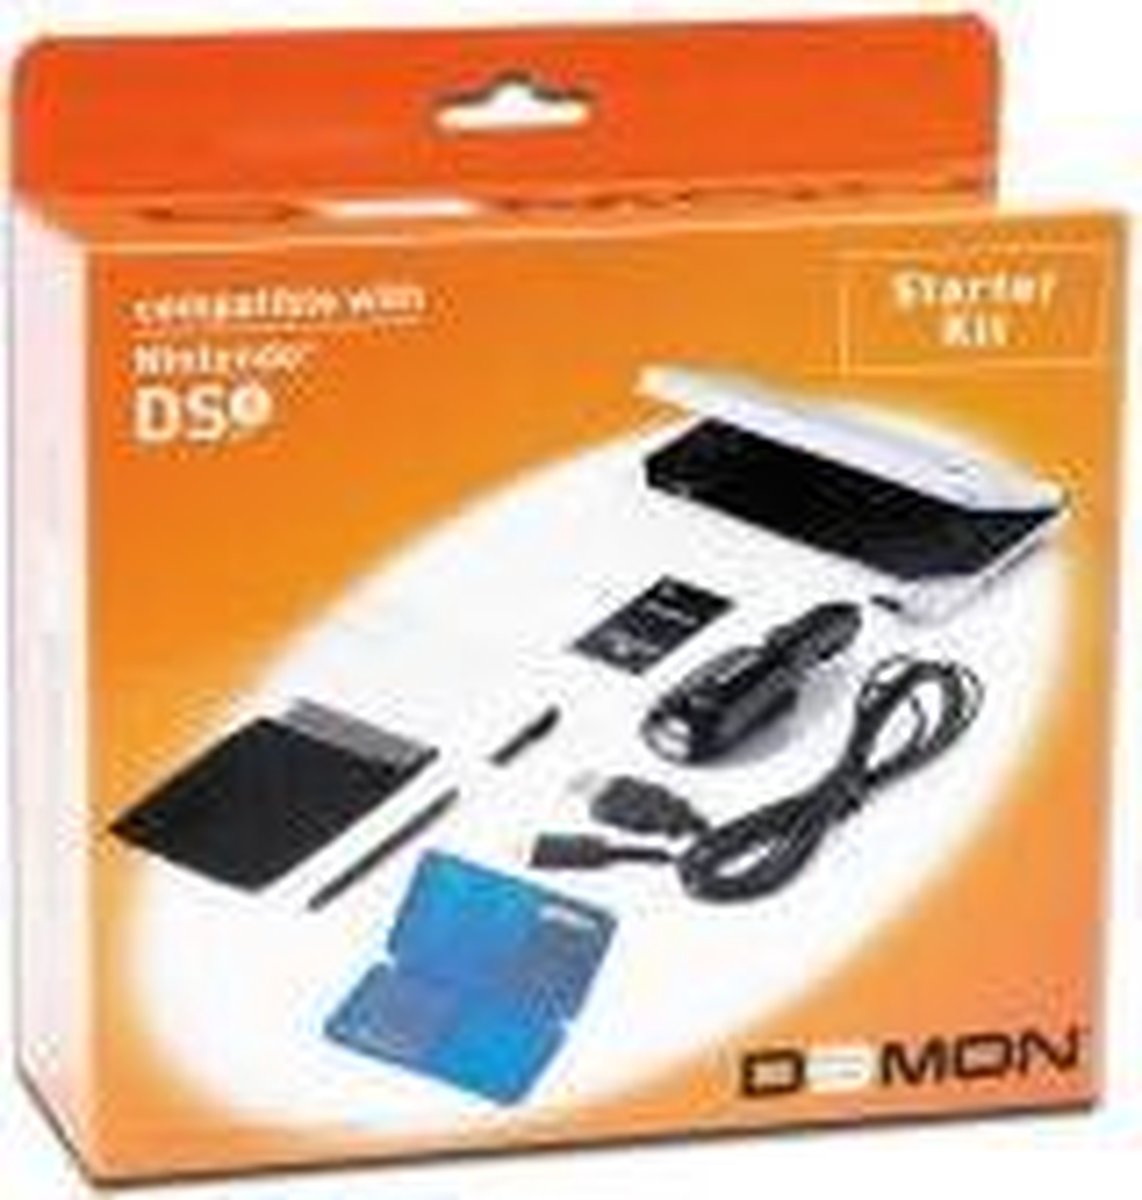 DSi Starter Kit - D3MON - D3MON